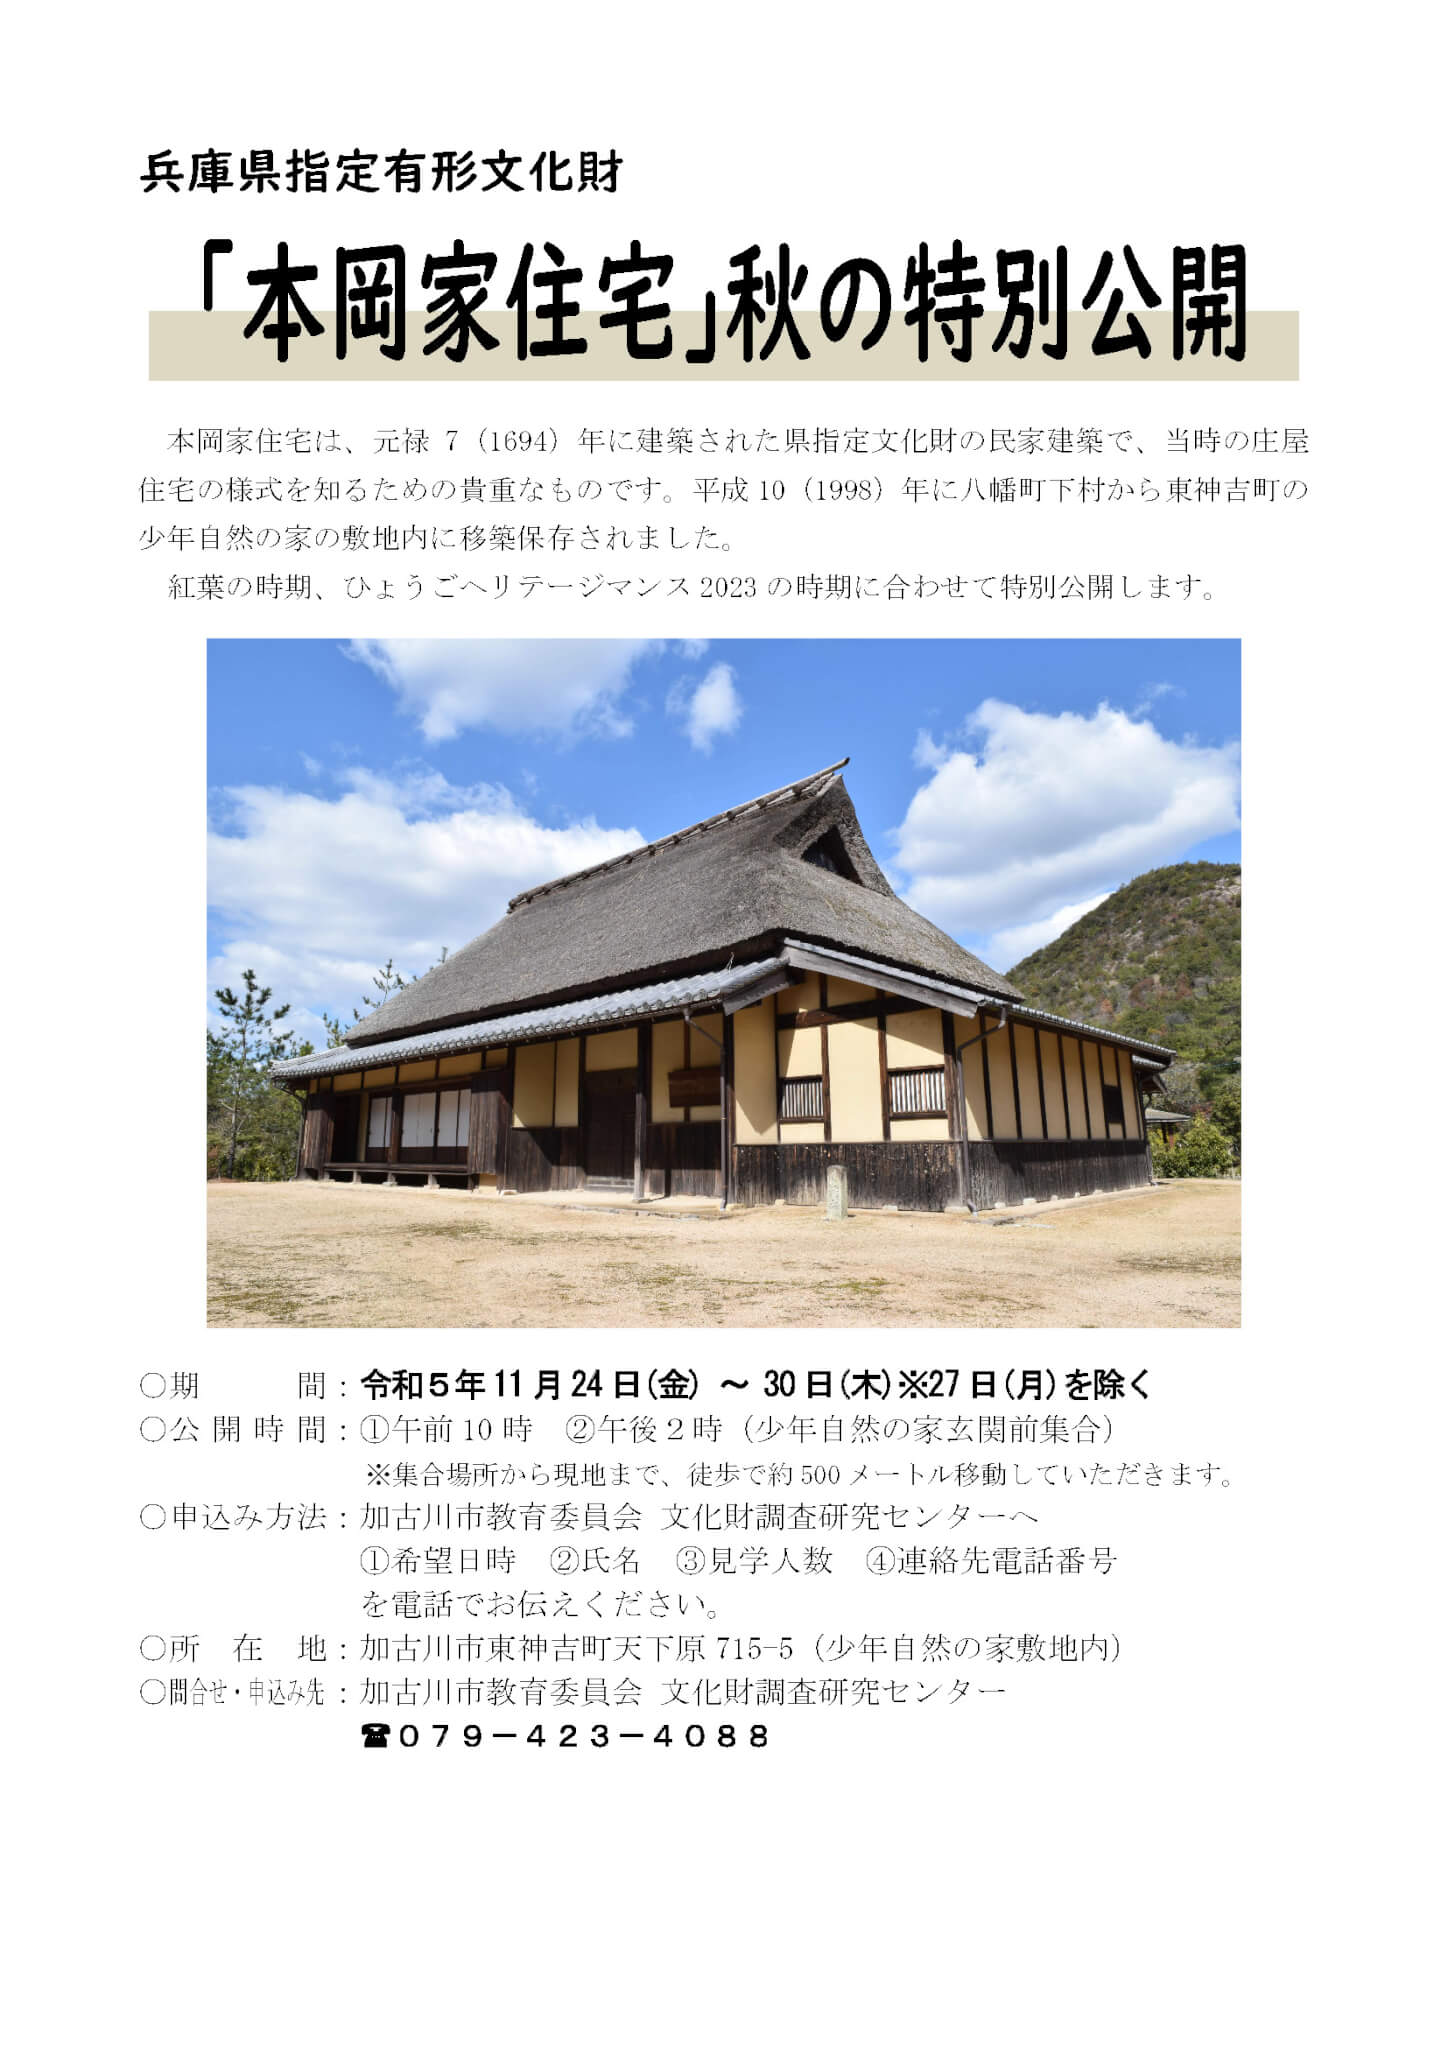 兵庫県指定有形文化財「本岡家住宅」秋の特別公開チラシ